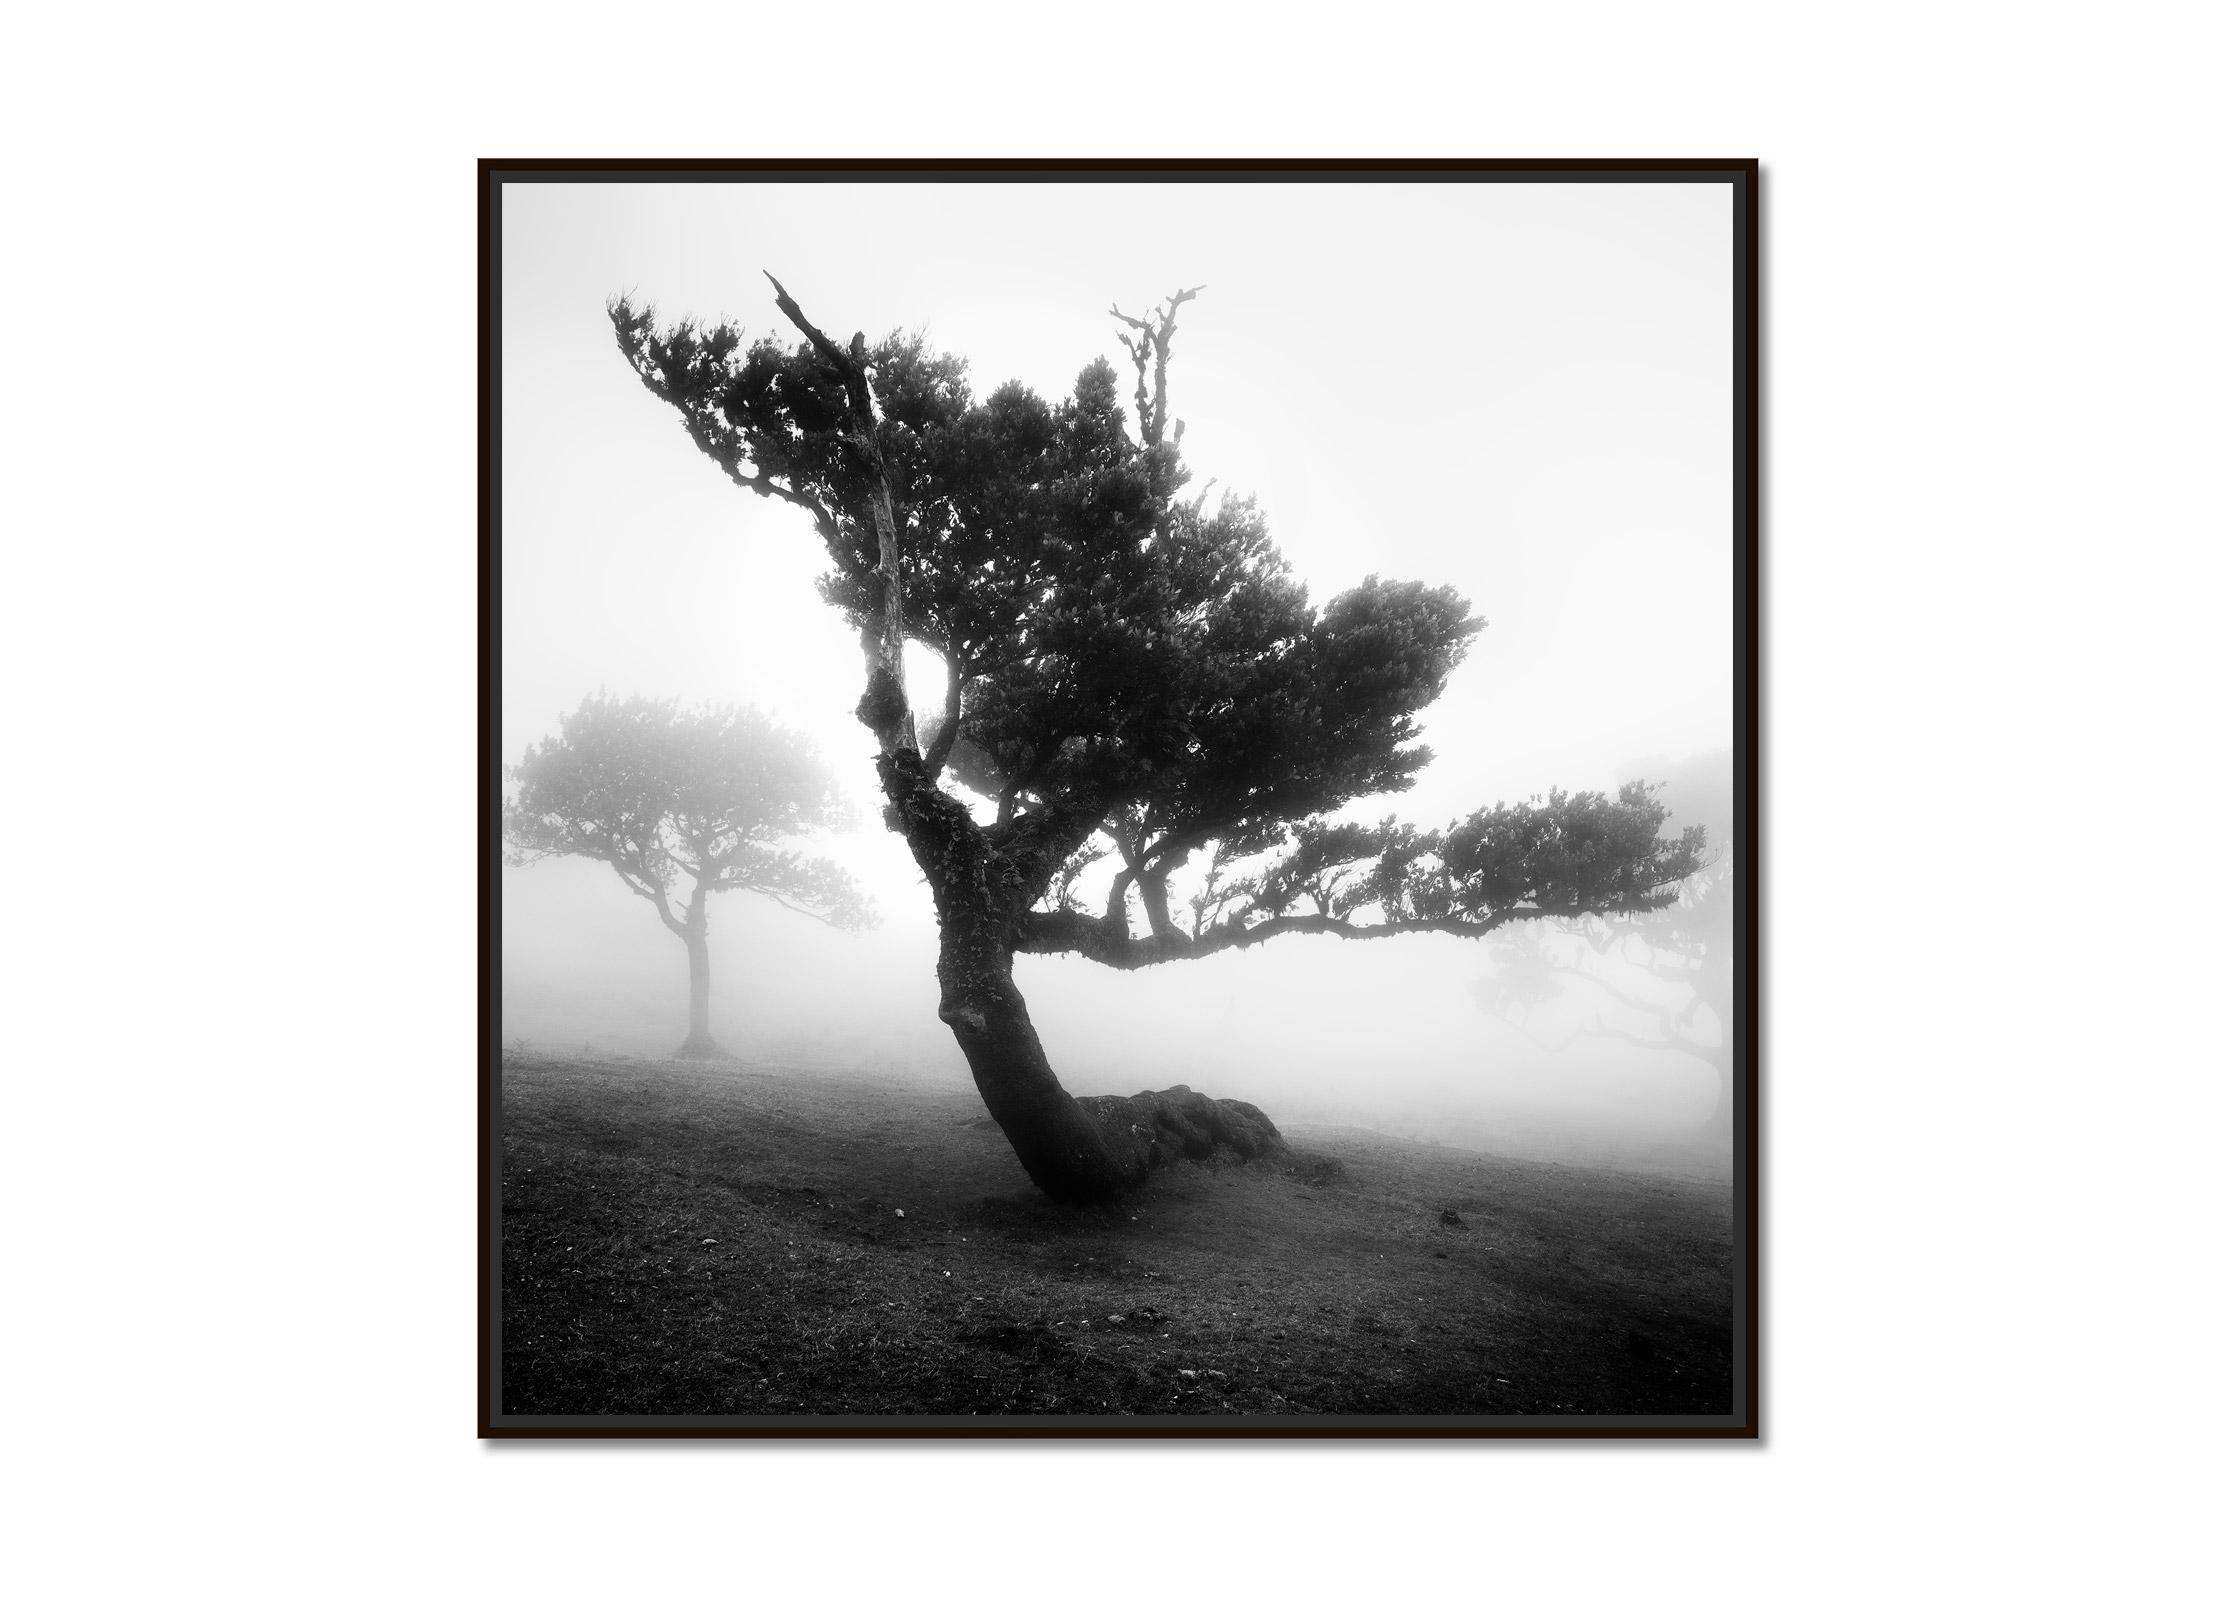 Antiker Lorbeerwolkenwald, gebogener Baum, Schwarz-Weiß-Fotografie, Landschaft – Photograph von Gerald Berghammer